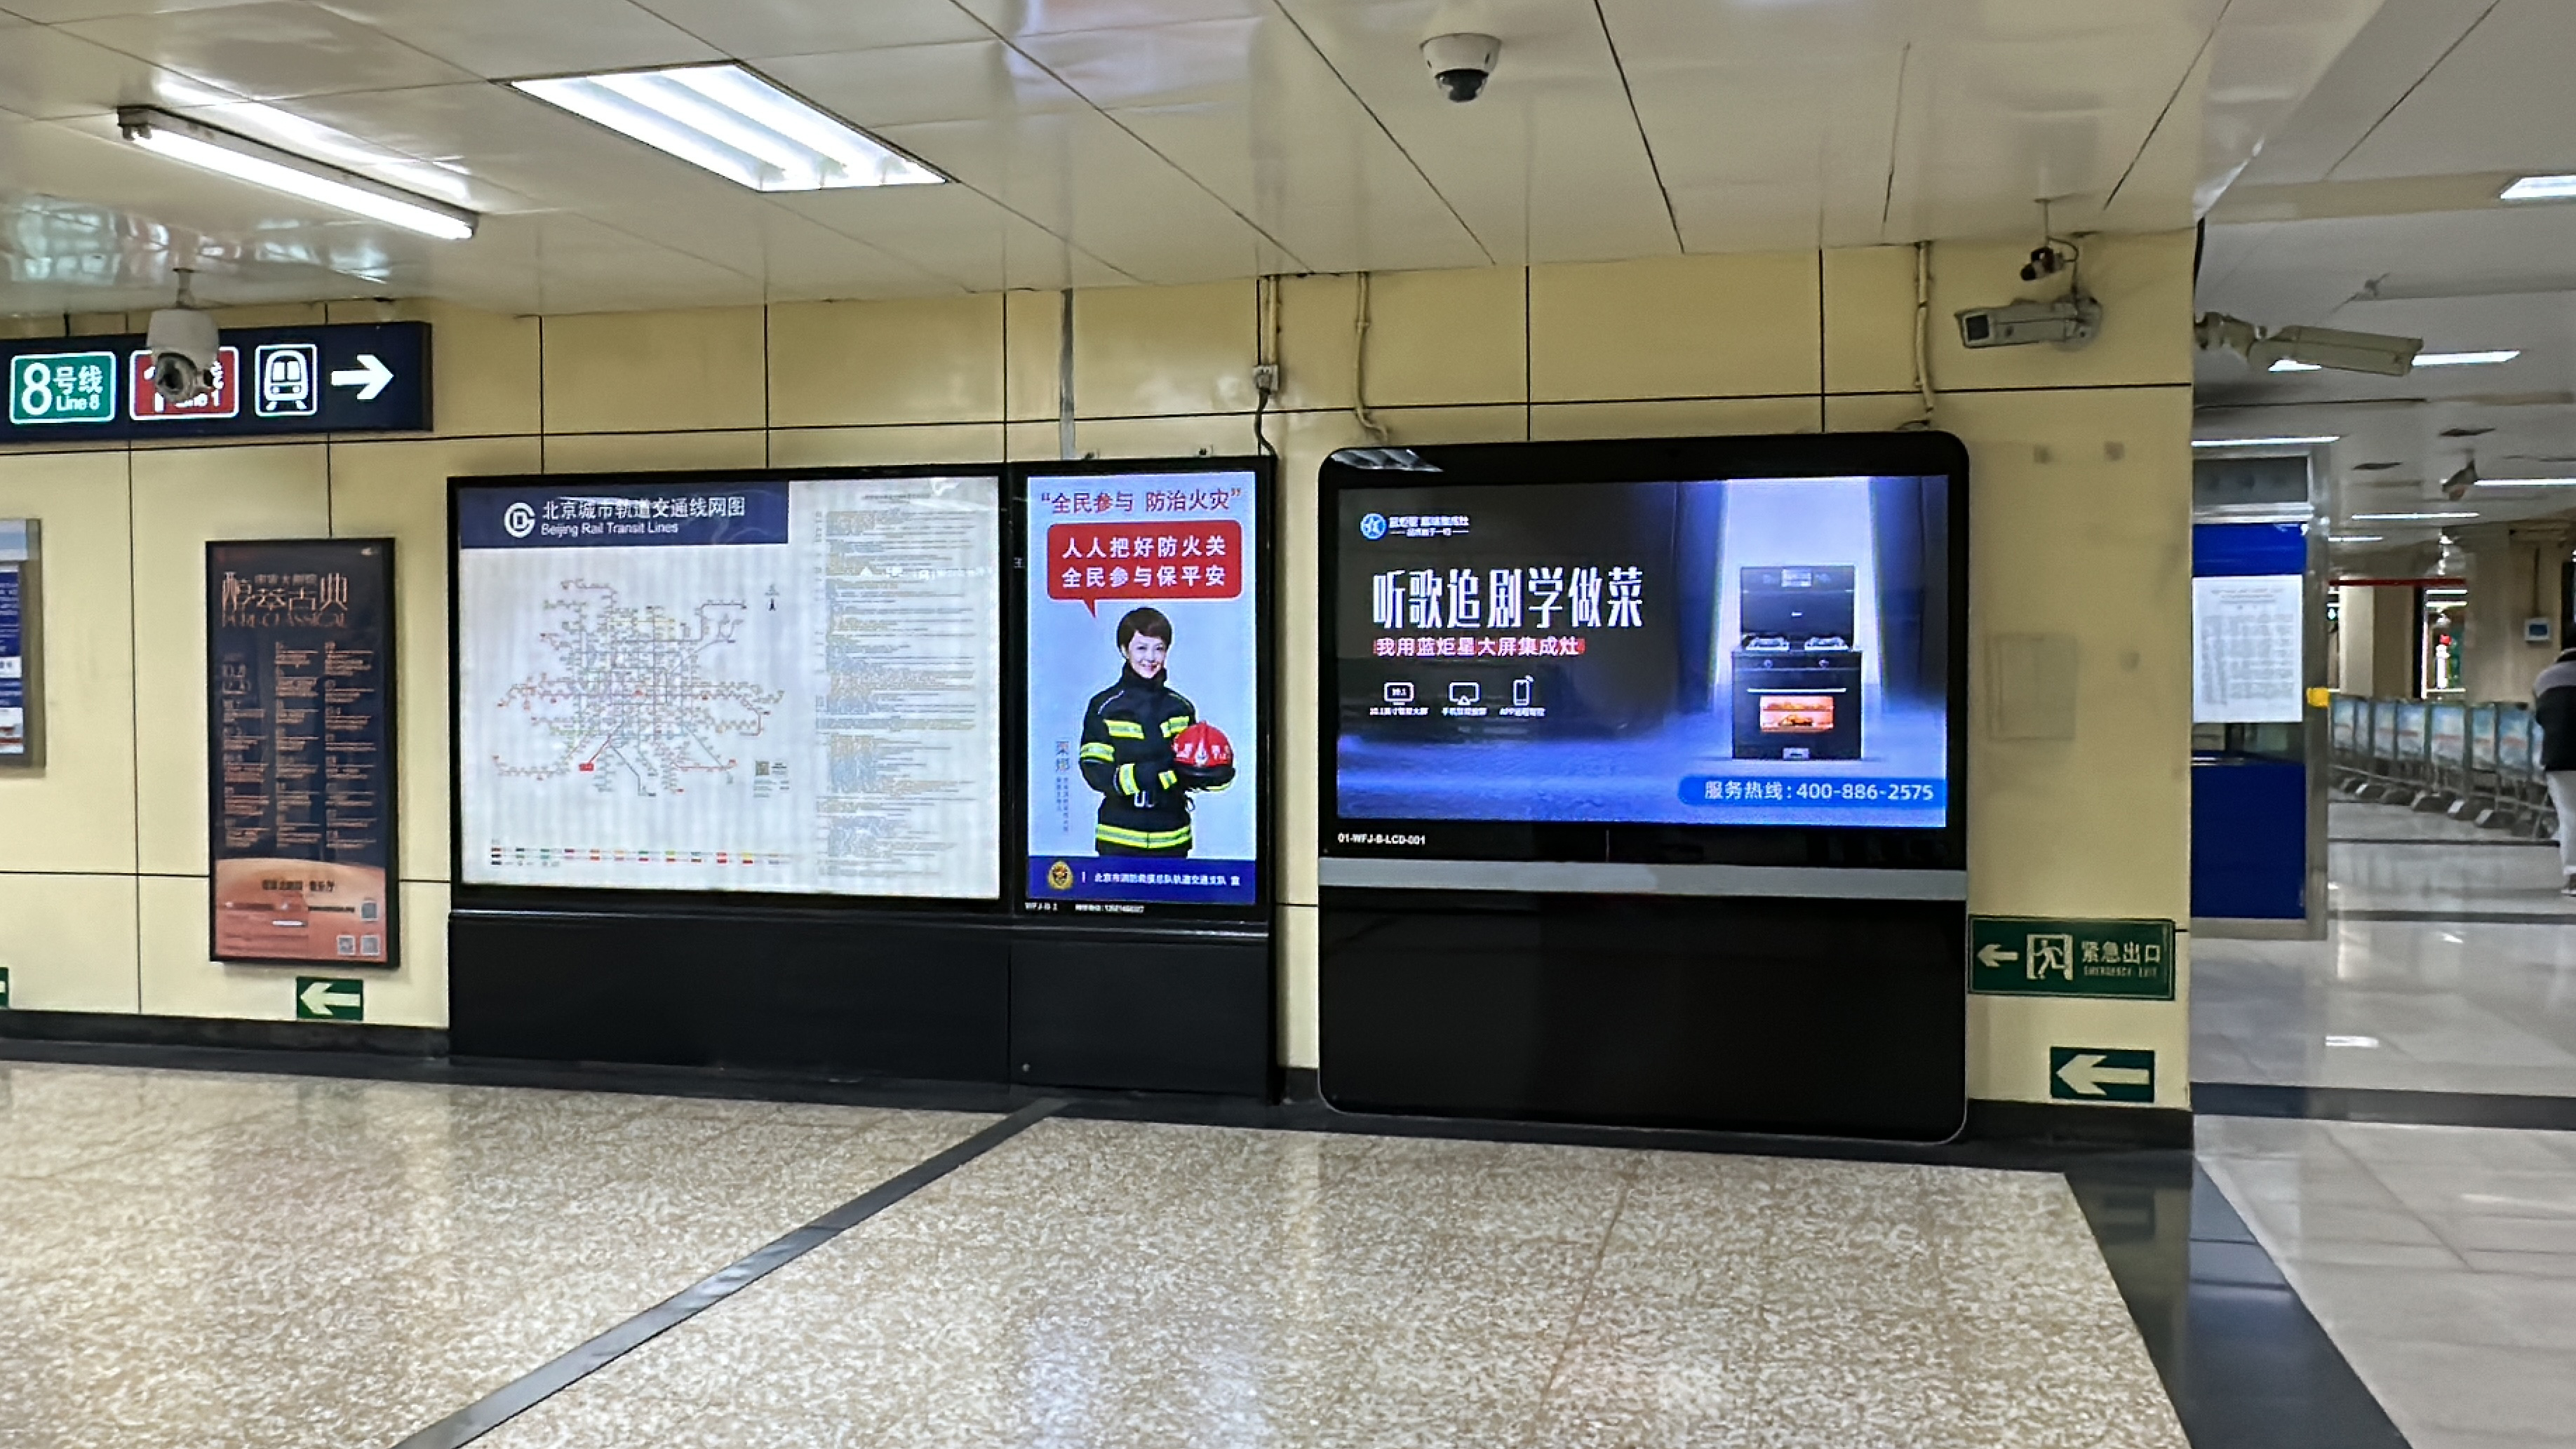 霸屏流量高地 蓝炬星北京地铁广告全面上线！